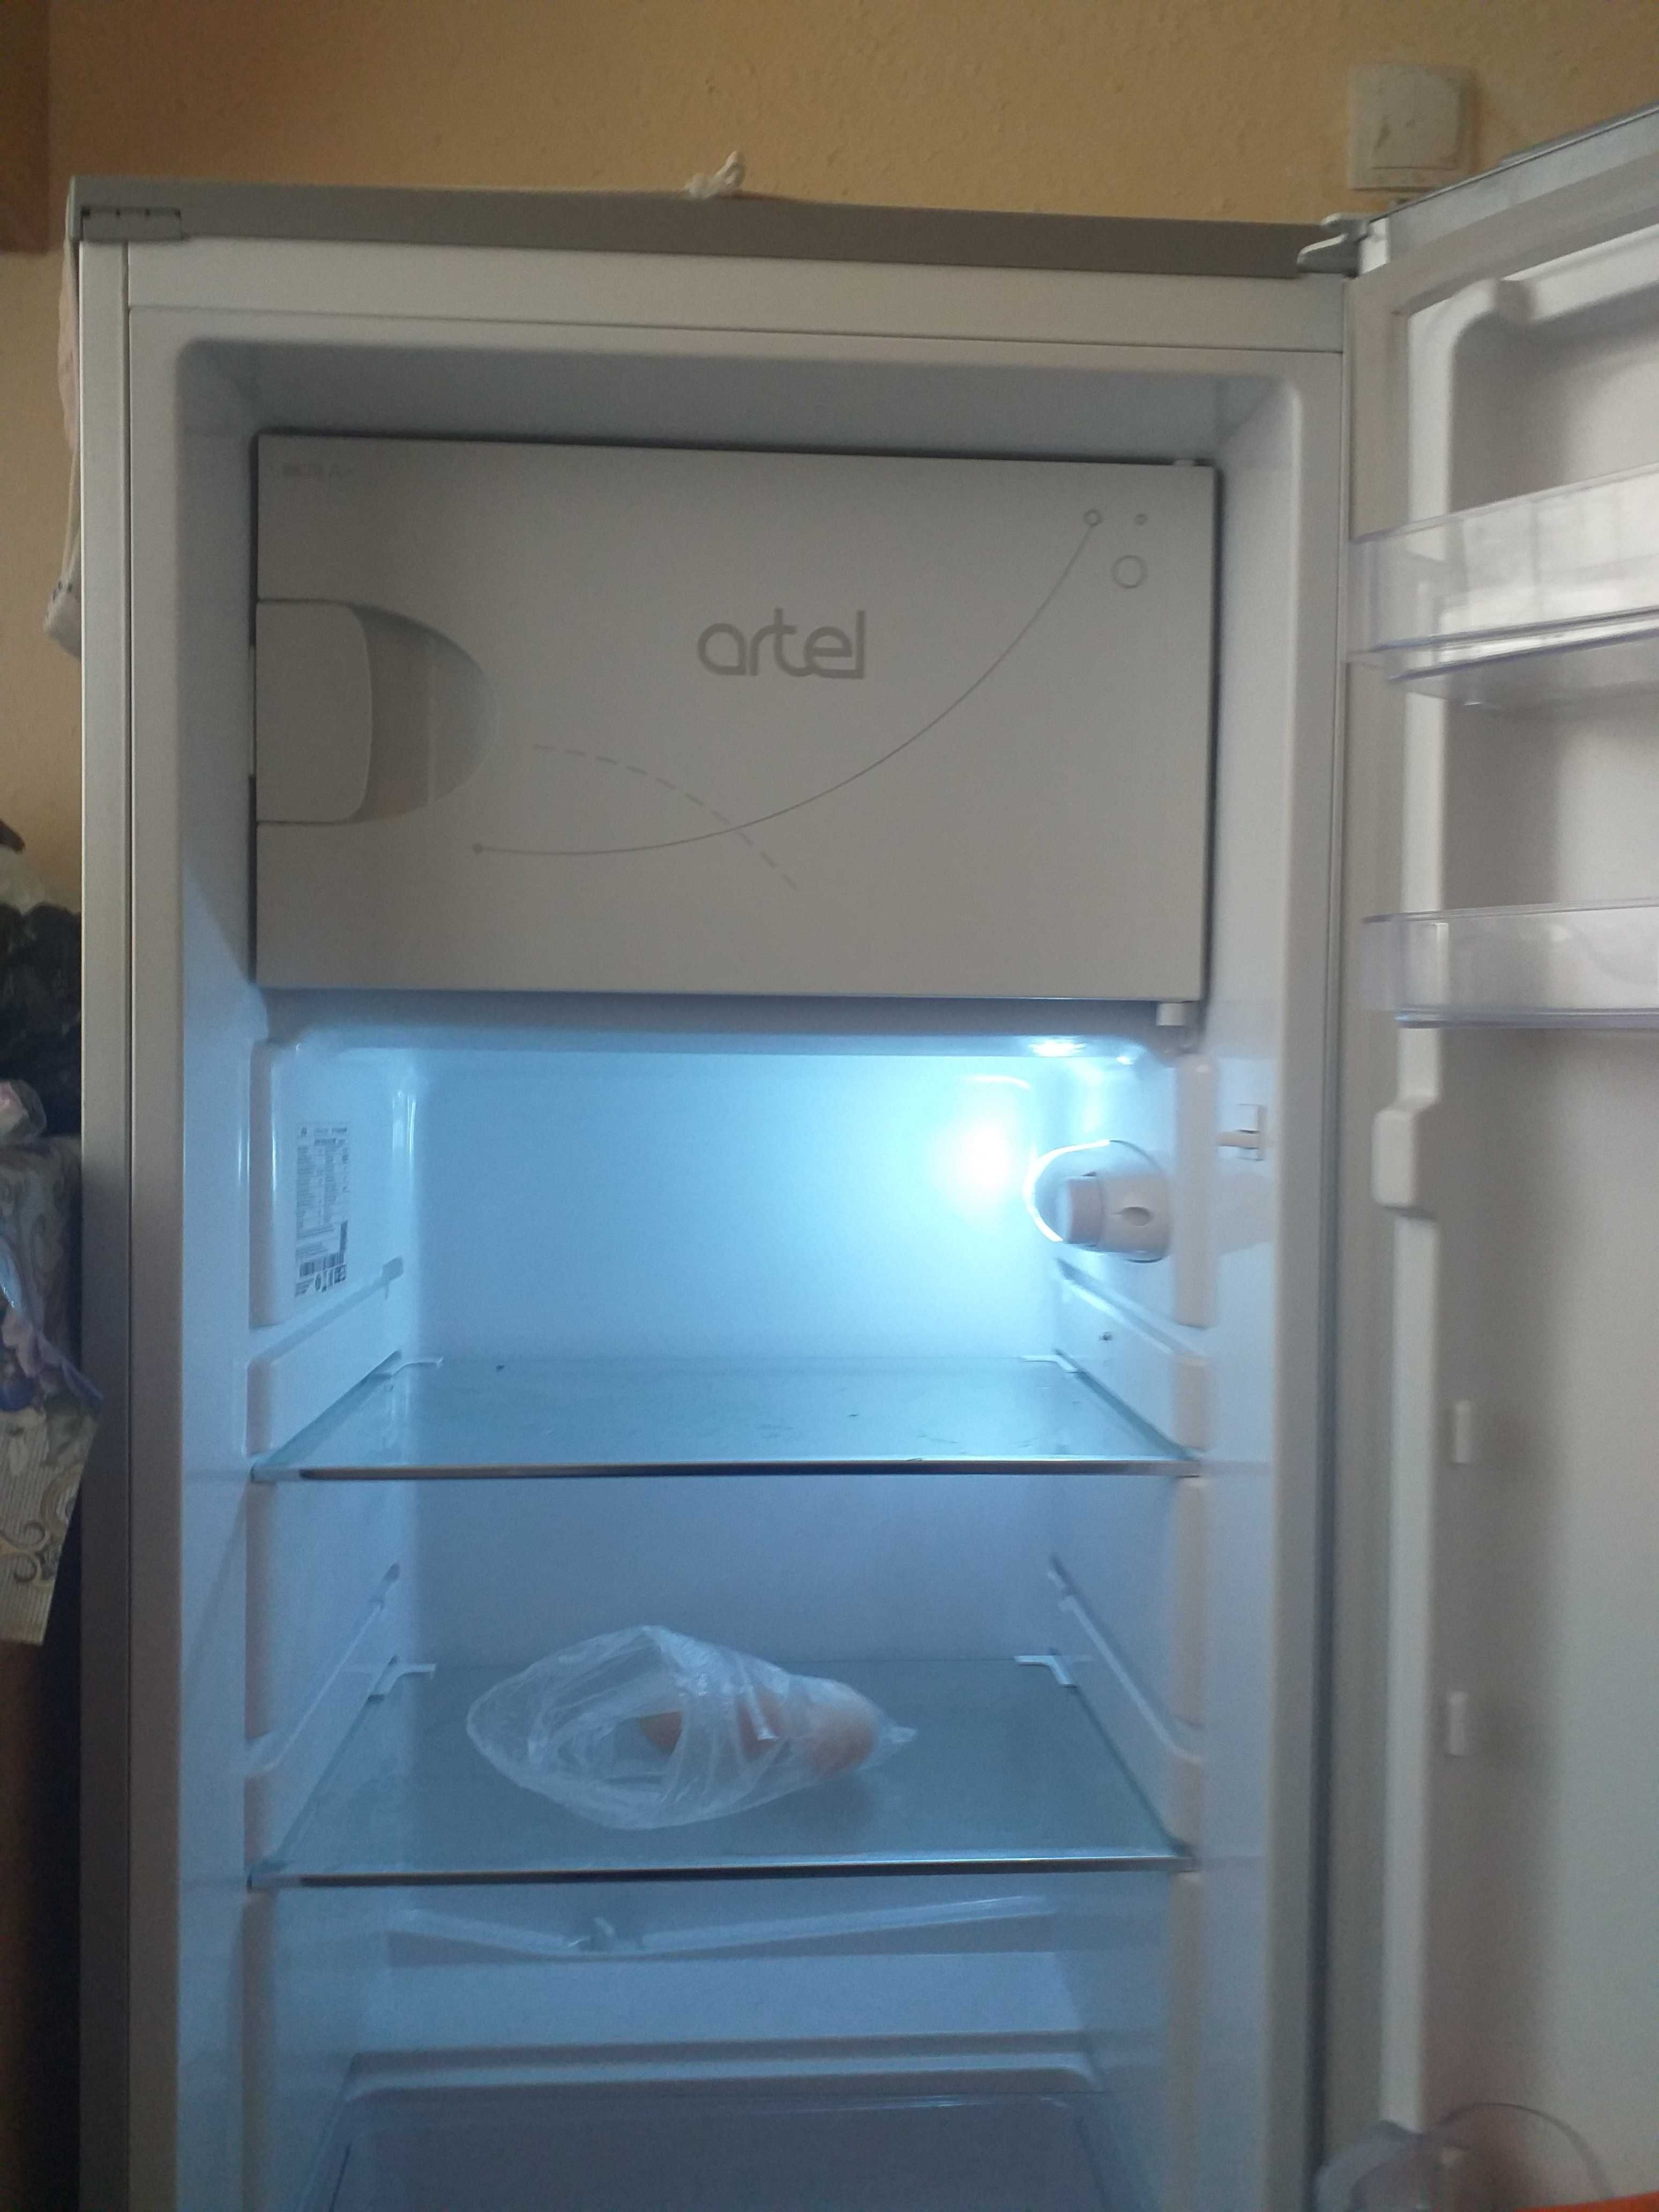 Продаю холодильник артель почти новый